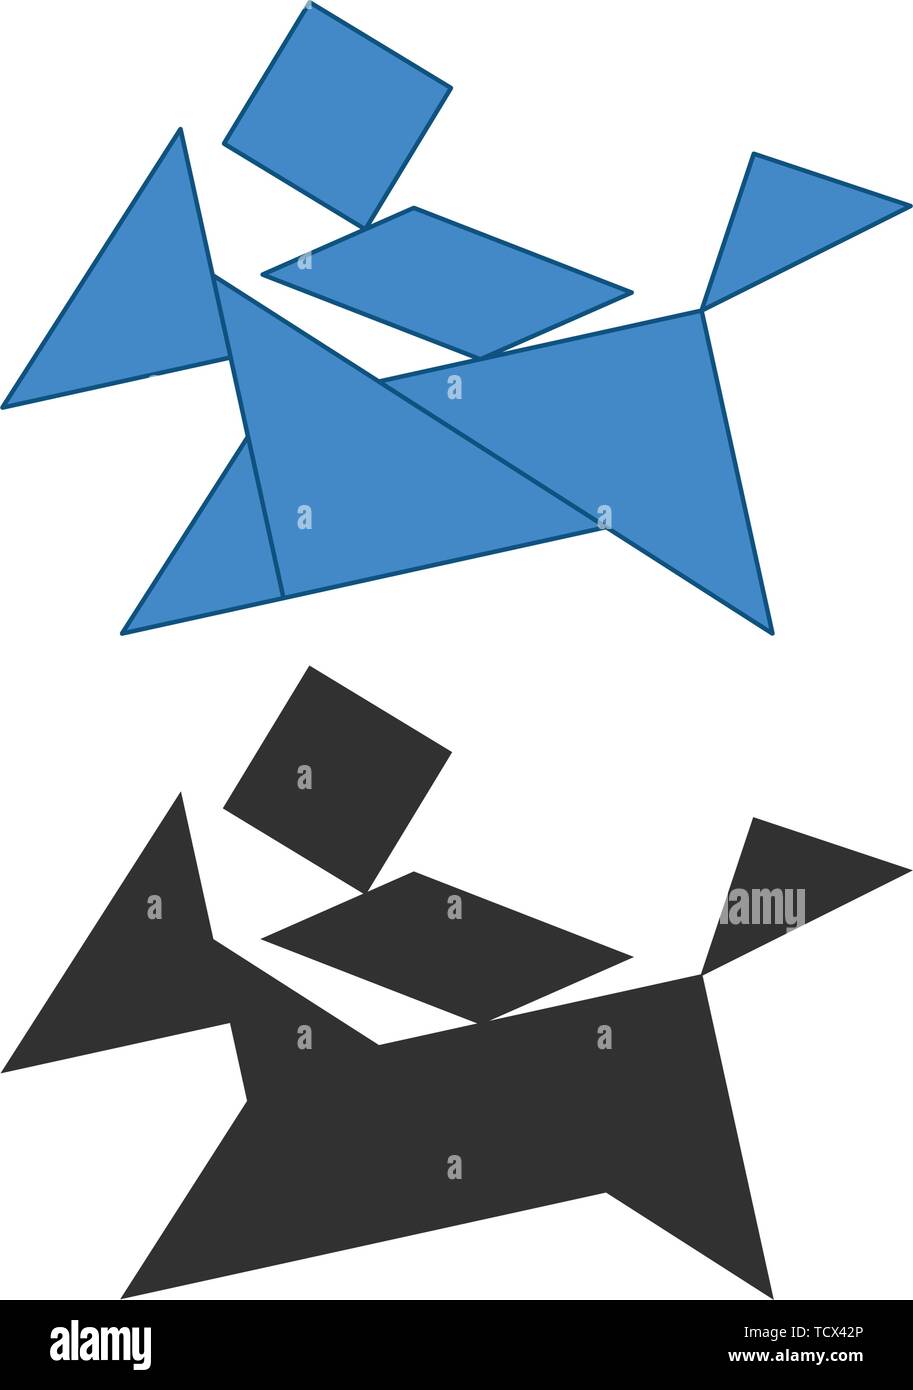 Mann auf einer kleinen Pferd Tangram. Traditionelle Chinesische Zerlegungspuzzle, sieben Tiling Stücke - geometrische Formen: Dreieck, Quadrat, Parallelogramm rhombus Stock Vektor